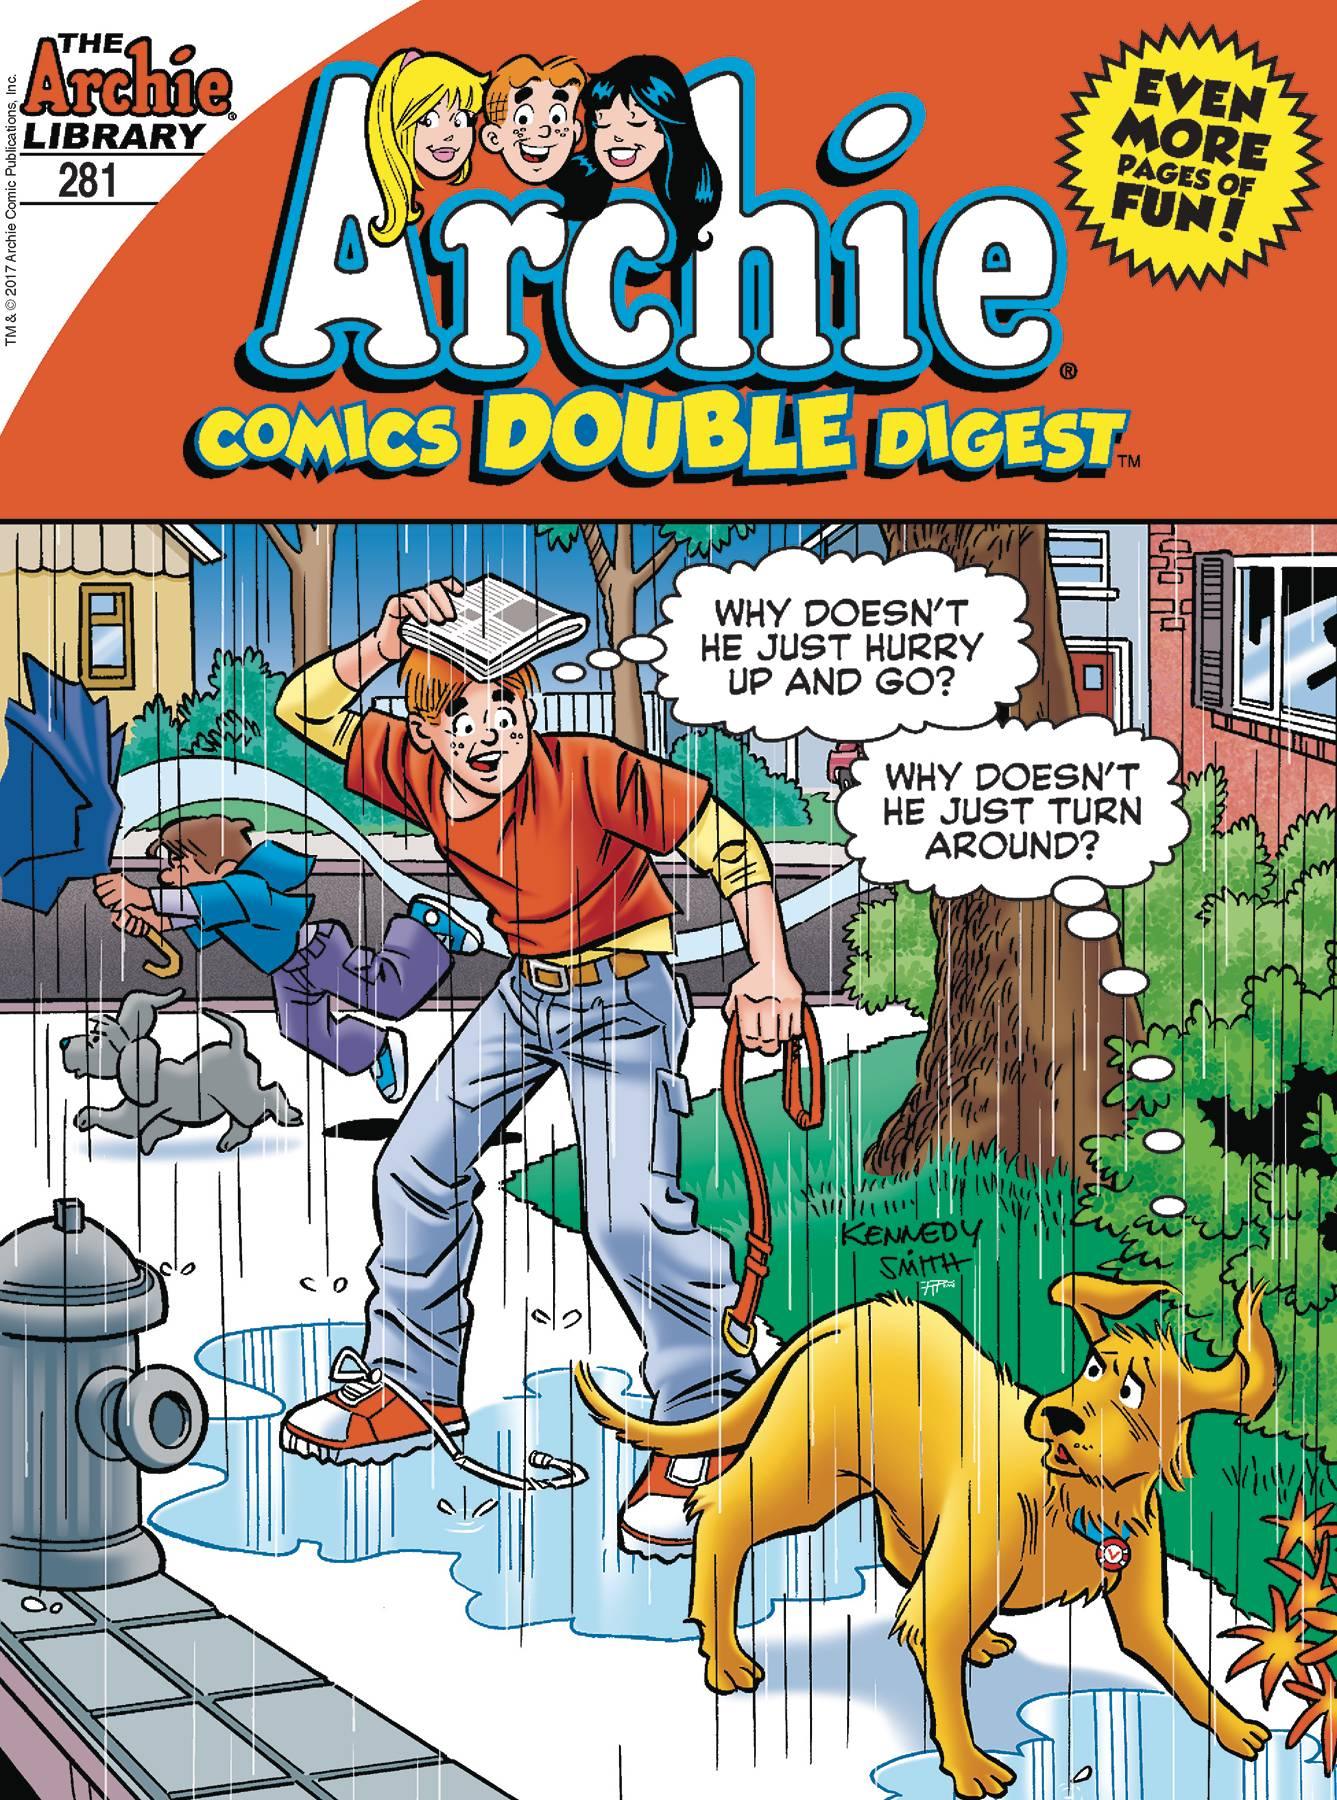 ARCHIE COMICS DOUBLE DIGEST #281 - Kings Comics